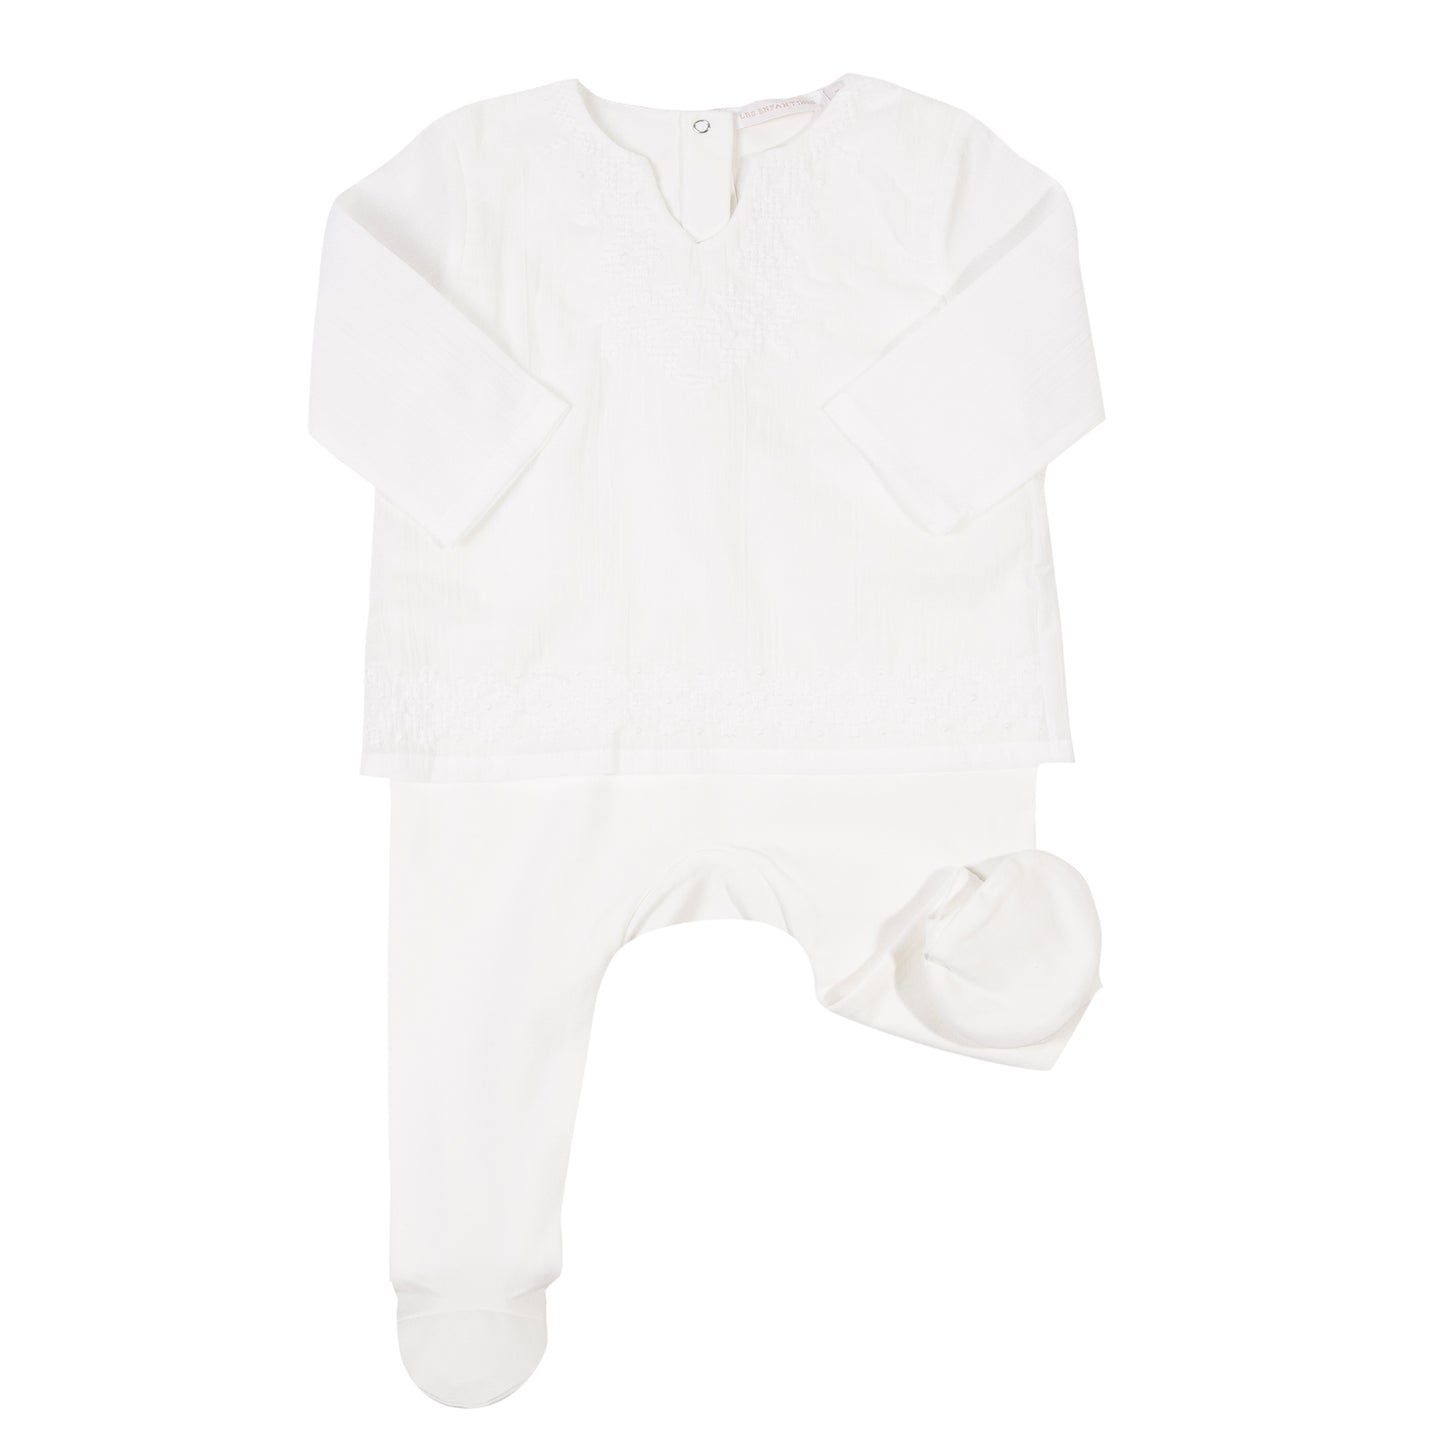 Pyjama blouse Criquet blanc les enfantines